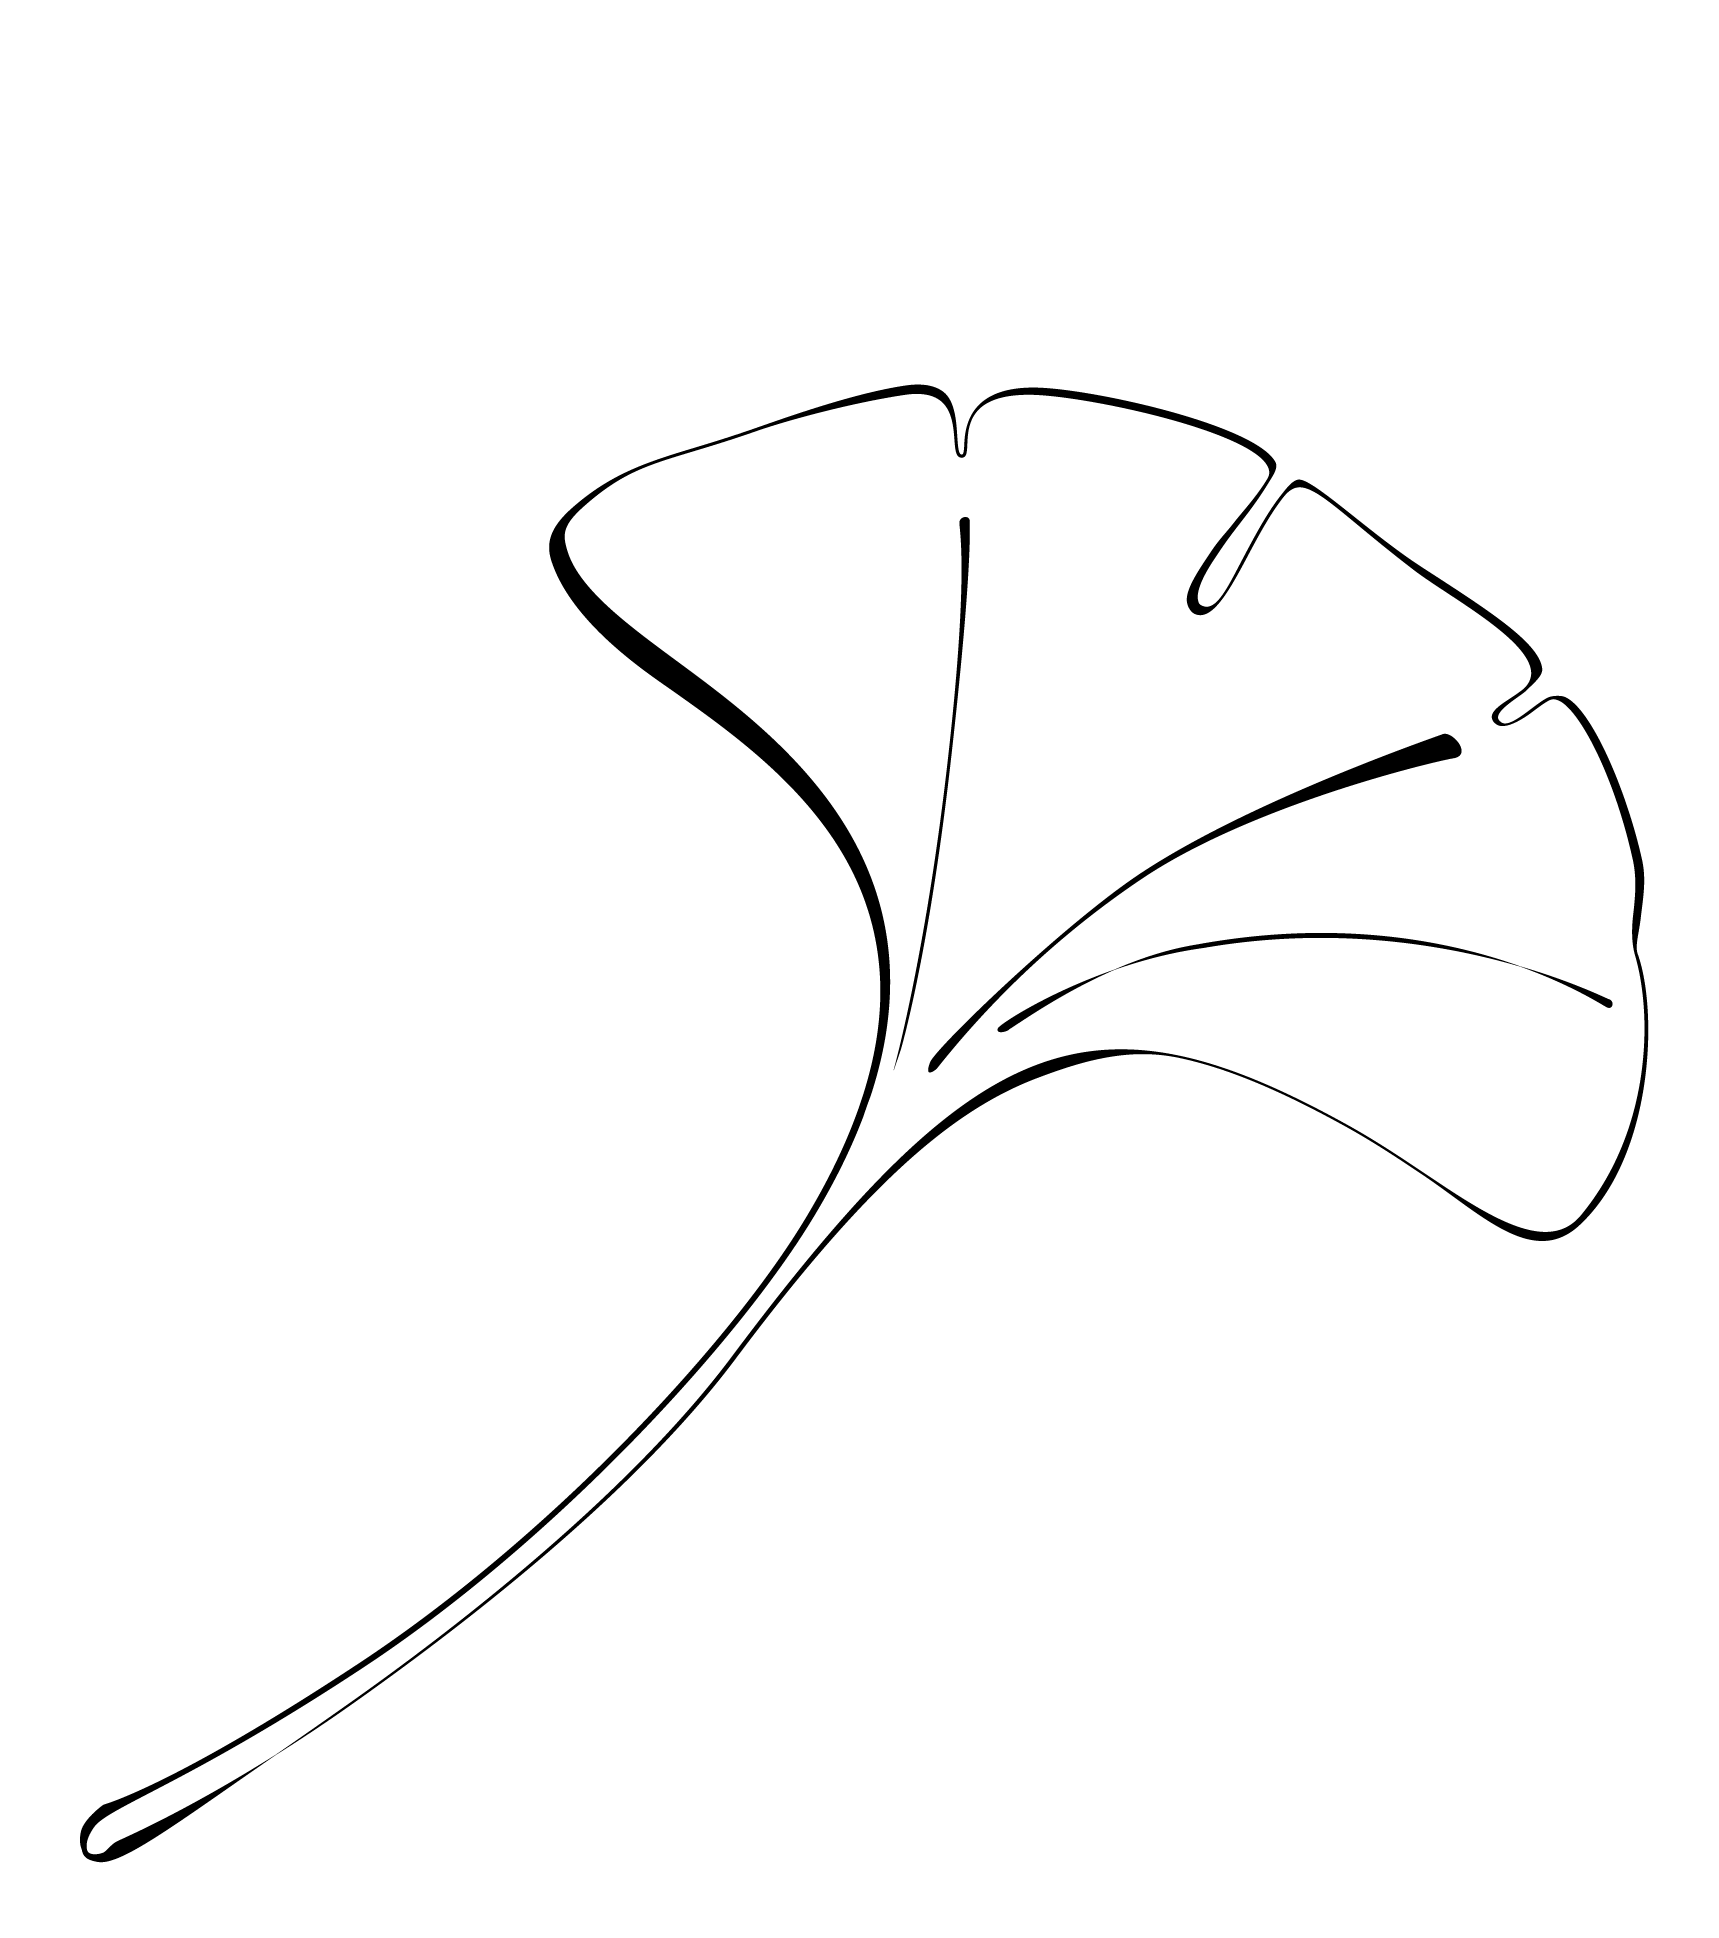 Eine Illustration von einem Ginkgo Blatt